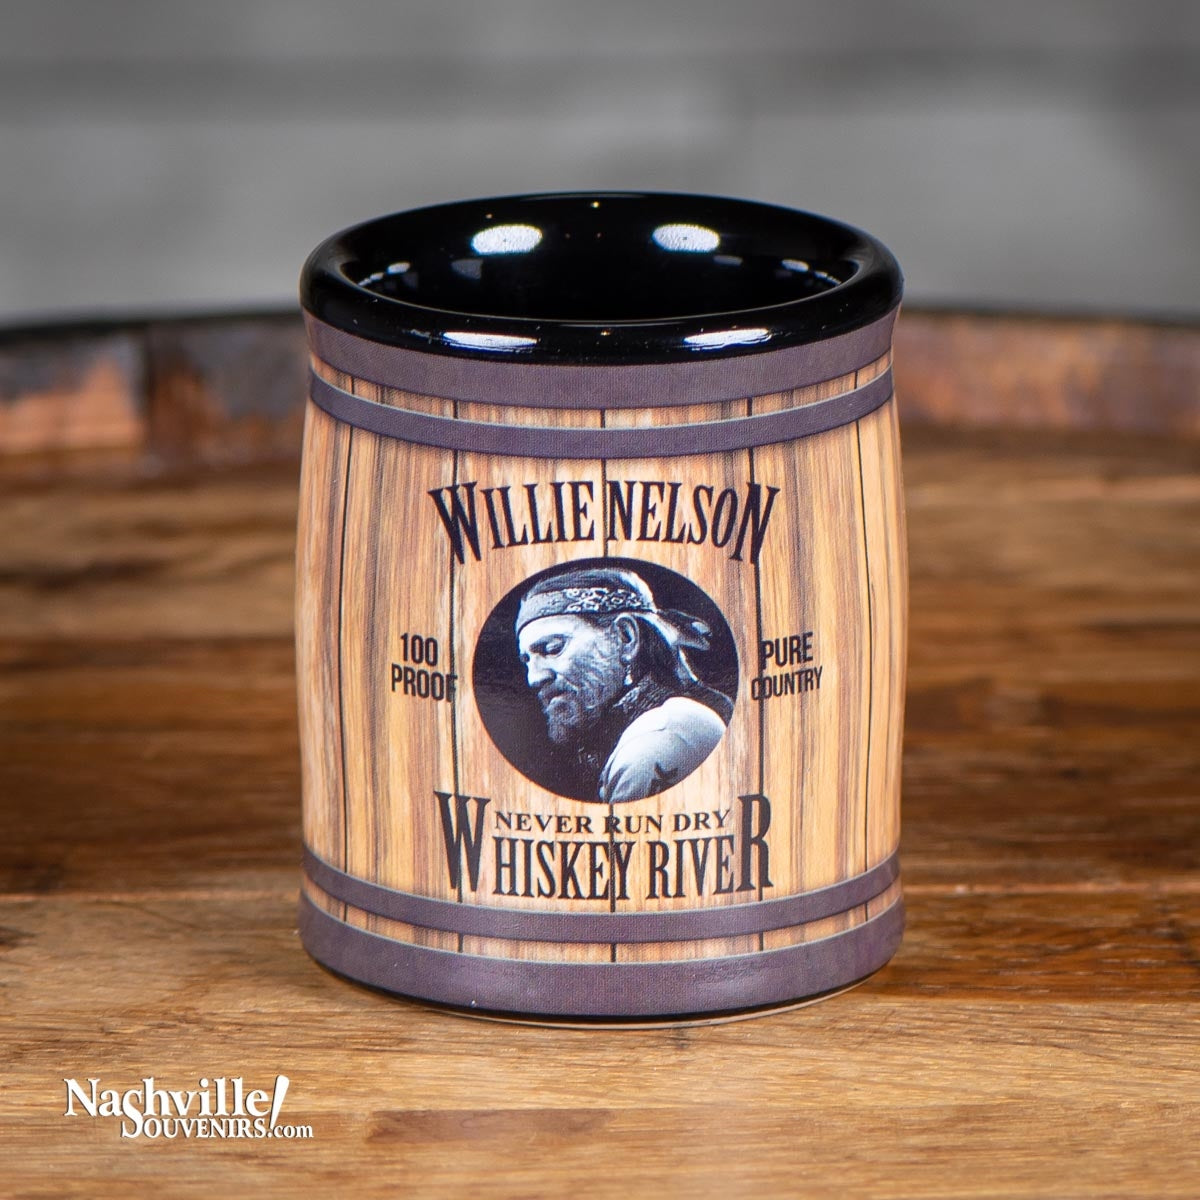 Willie Nelson "Whiskey River" Shot Glass